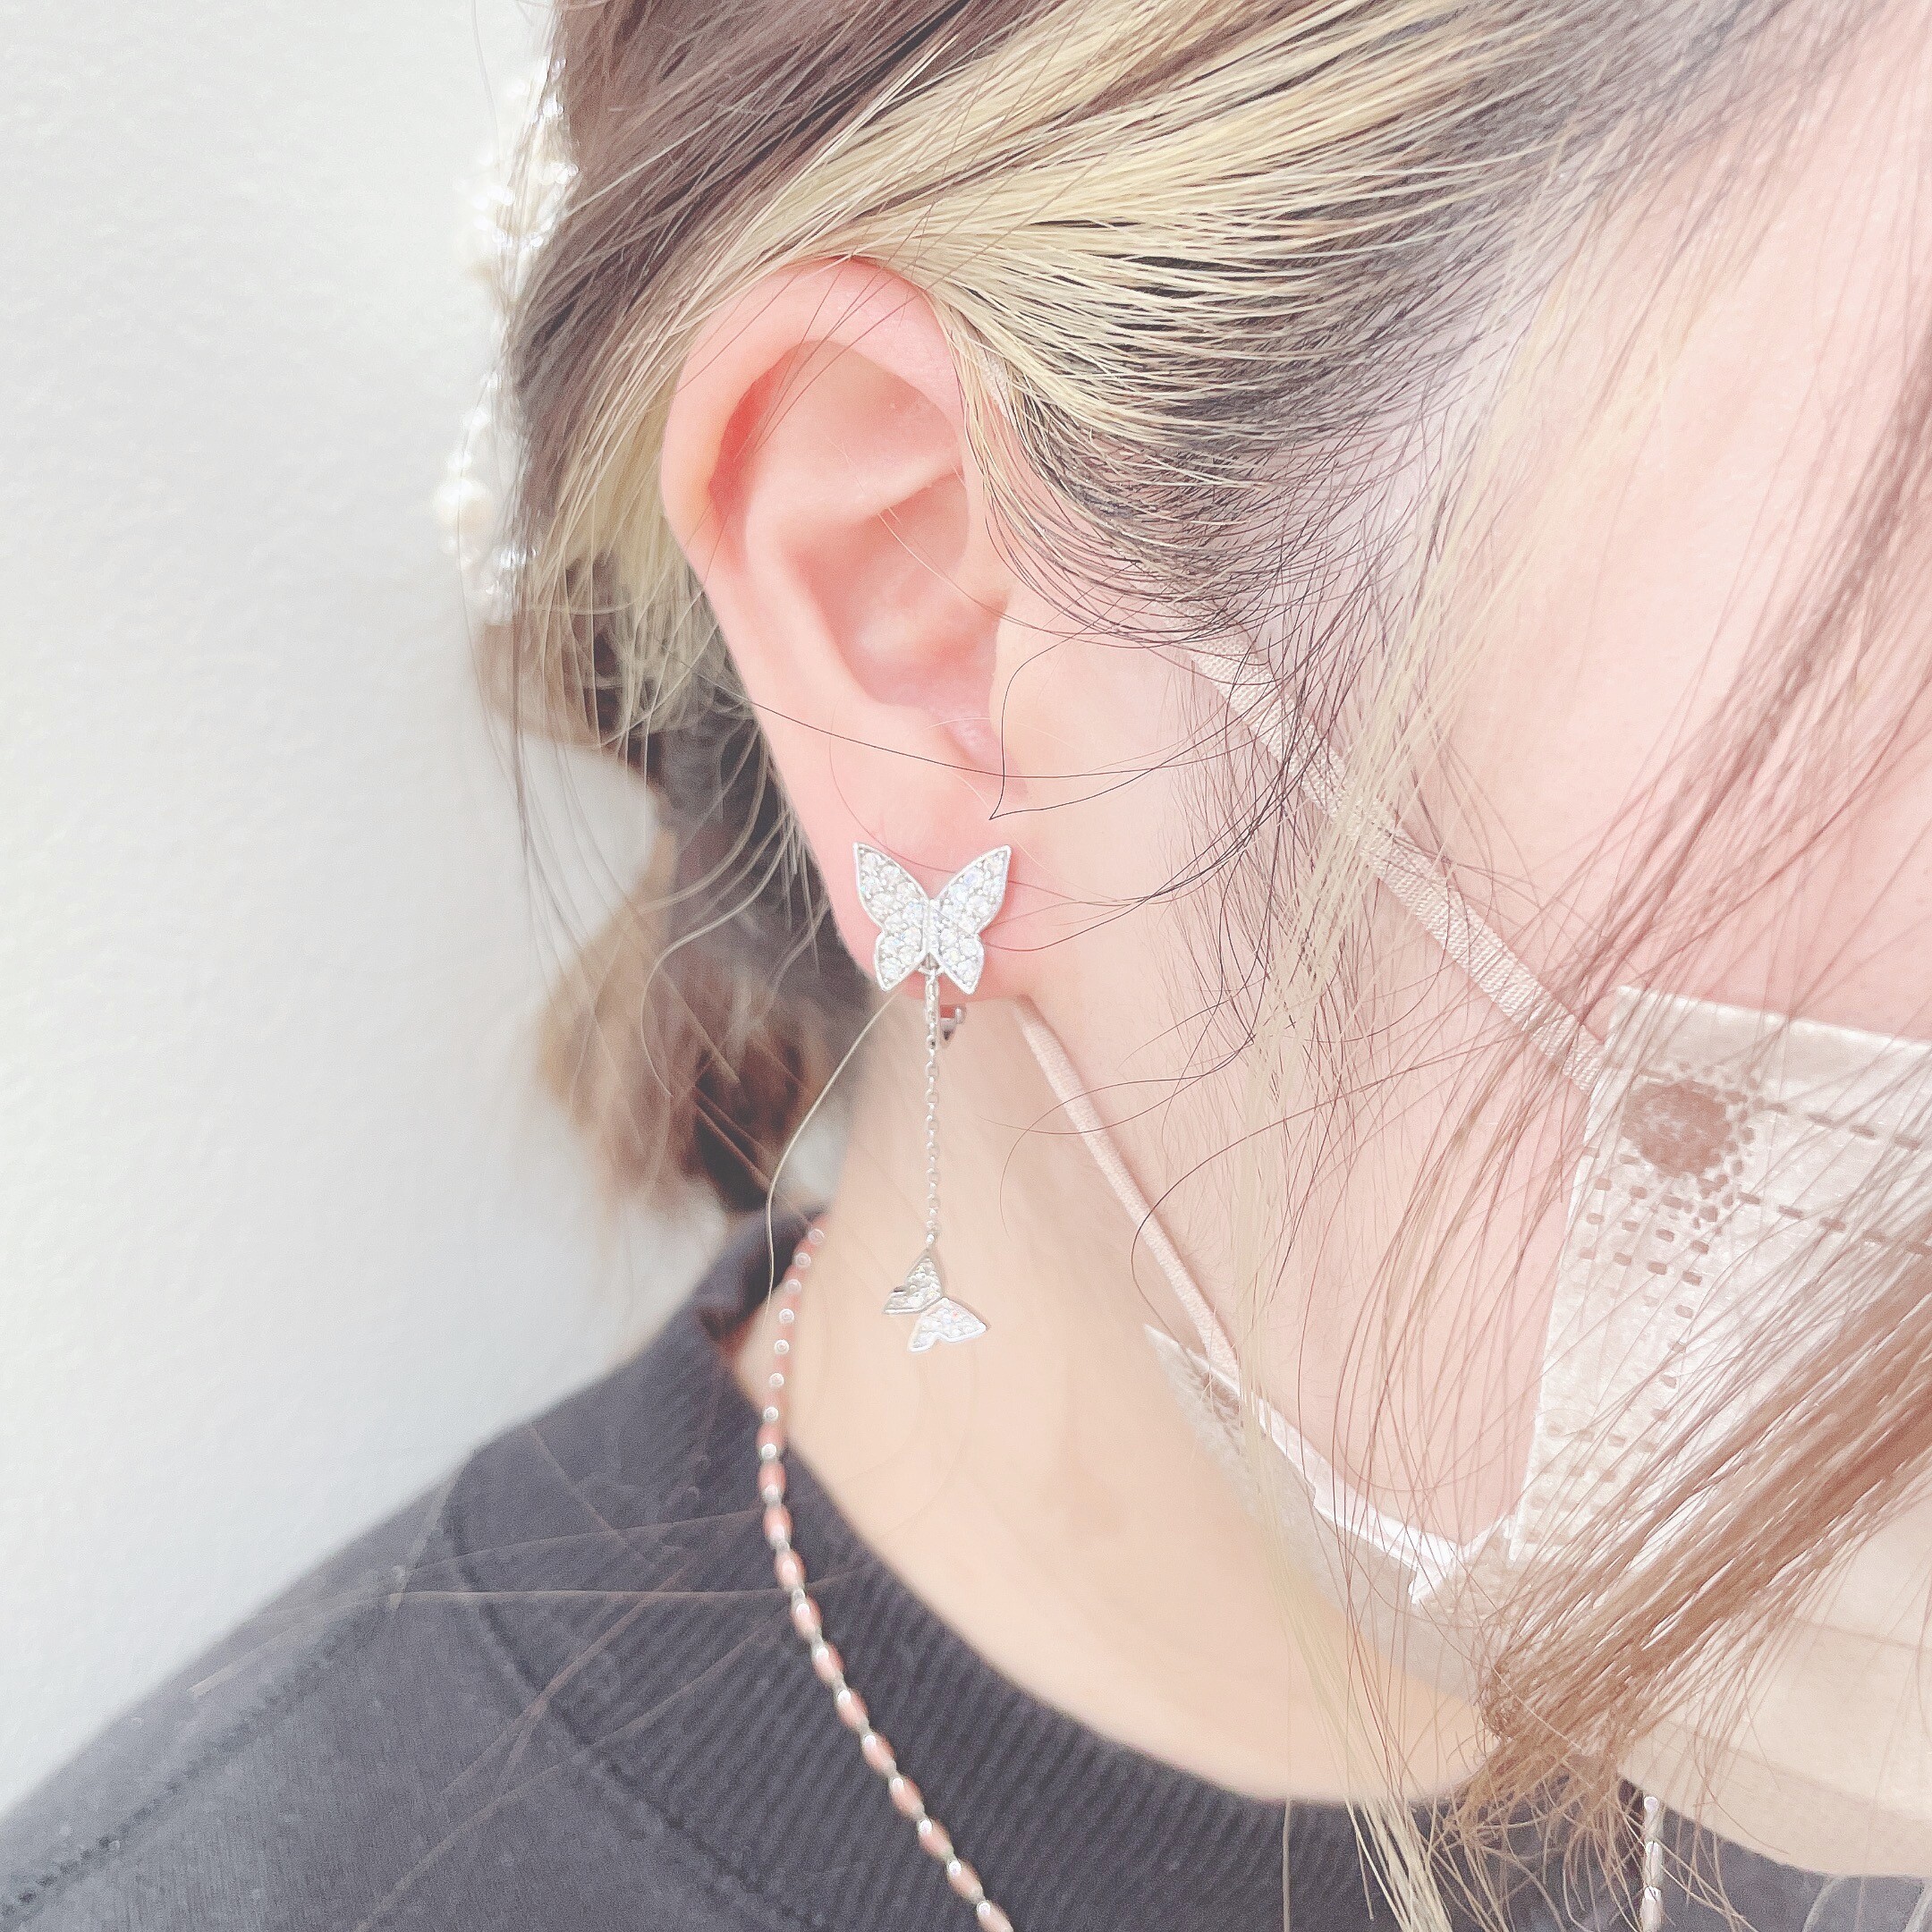 Butterfly earring 🦋𓈒𓂂𓏸